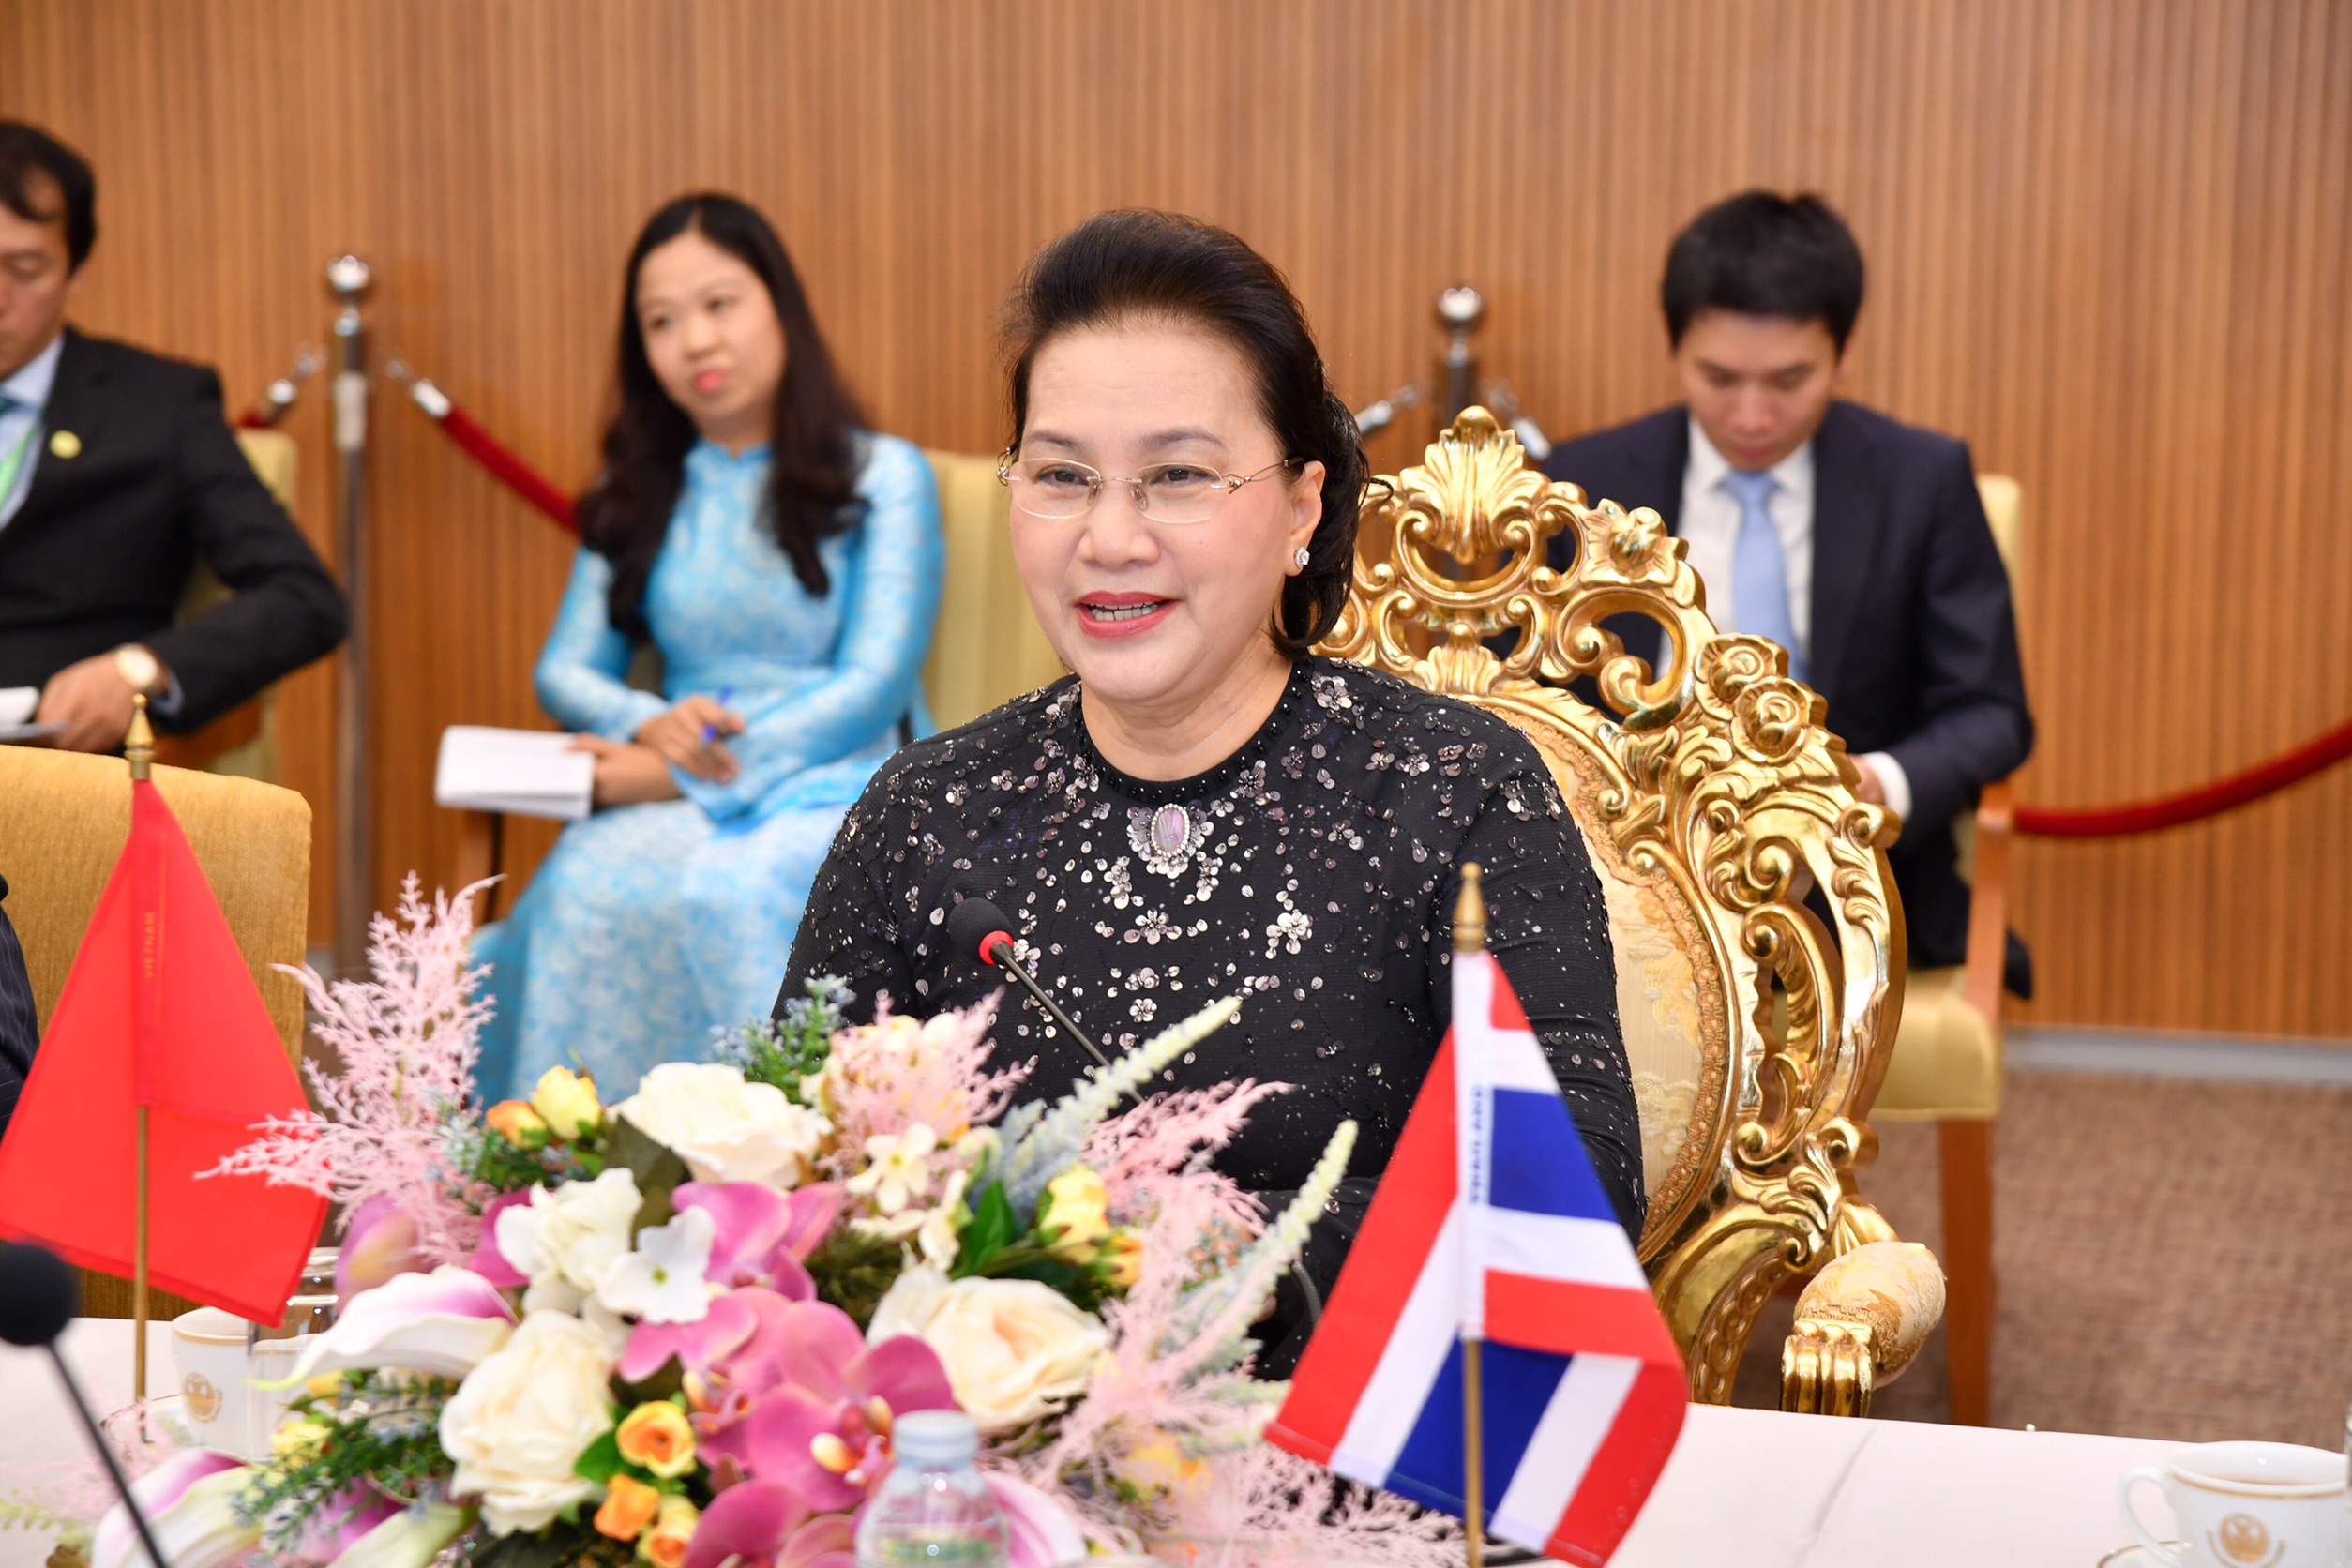 นางสาวเหวียน ถิ กีม เงิน ประธานสภาแห่งชาติสาธารณรัฐสังคมนิยมเวียดนาม หารือทวิภาคีร่วมกับประธานวุฒิสภา ในโอกาสเดินทางเยือนประเทศไทย ในฐานะแขกของรัฐสภา (27 สิงหาคม 2562